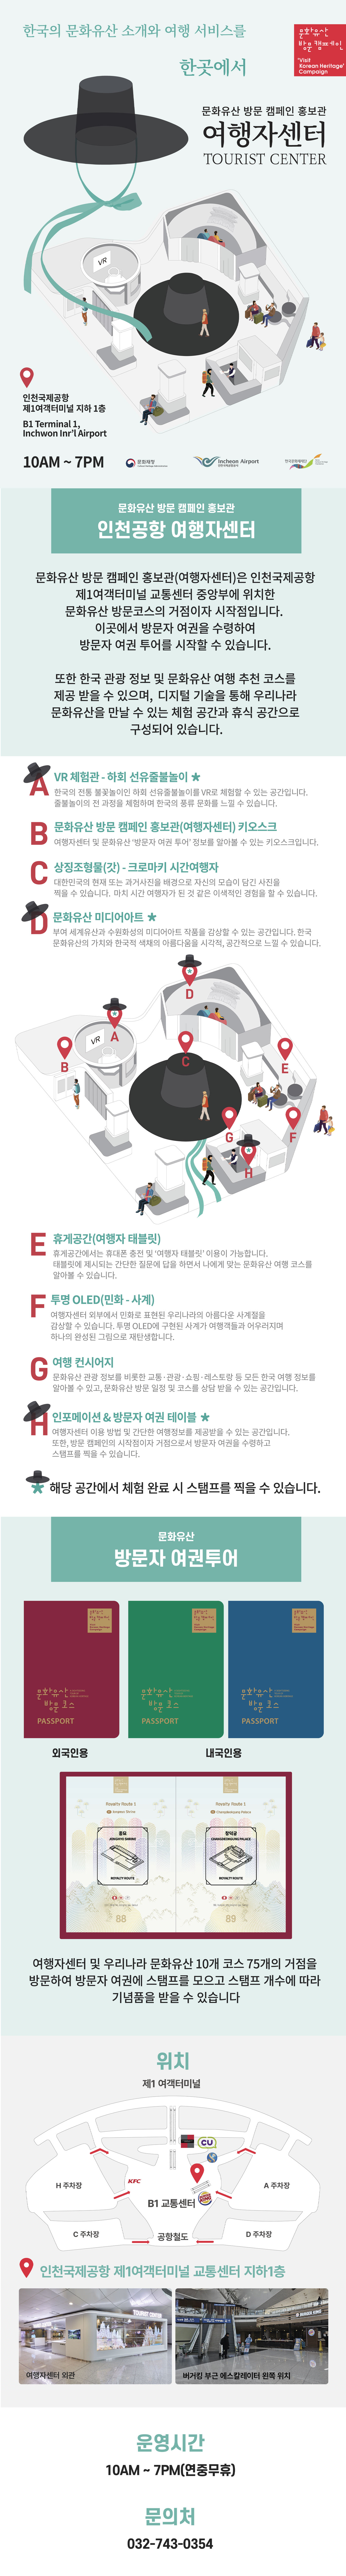 한국의 문화유산 소개와 여행 서비스를 한곳에서 문화유산 방문 캠페인 홍보관 여행자센터 TORIST CENTER 웹포스터